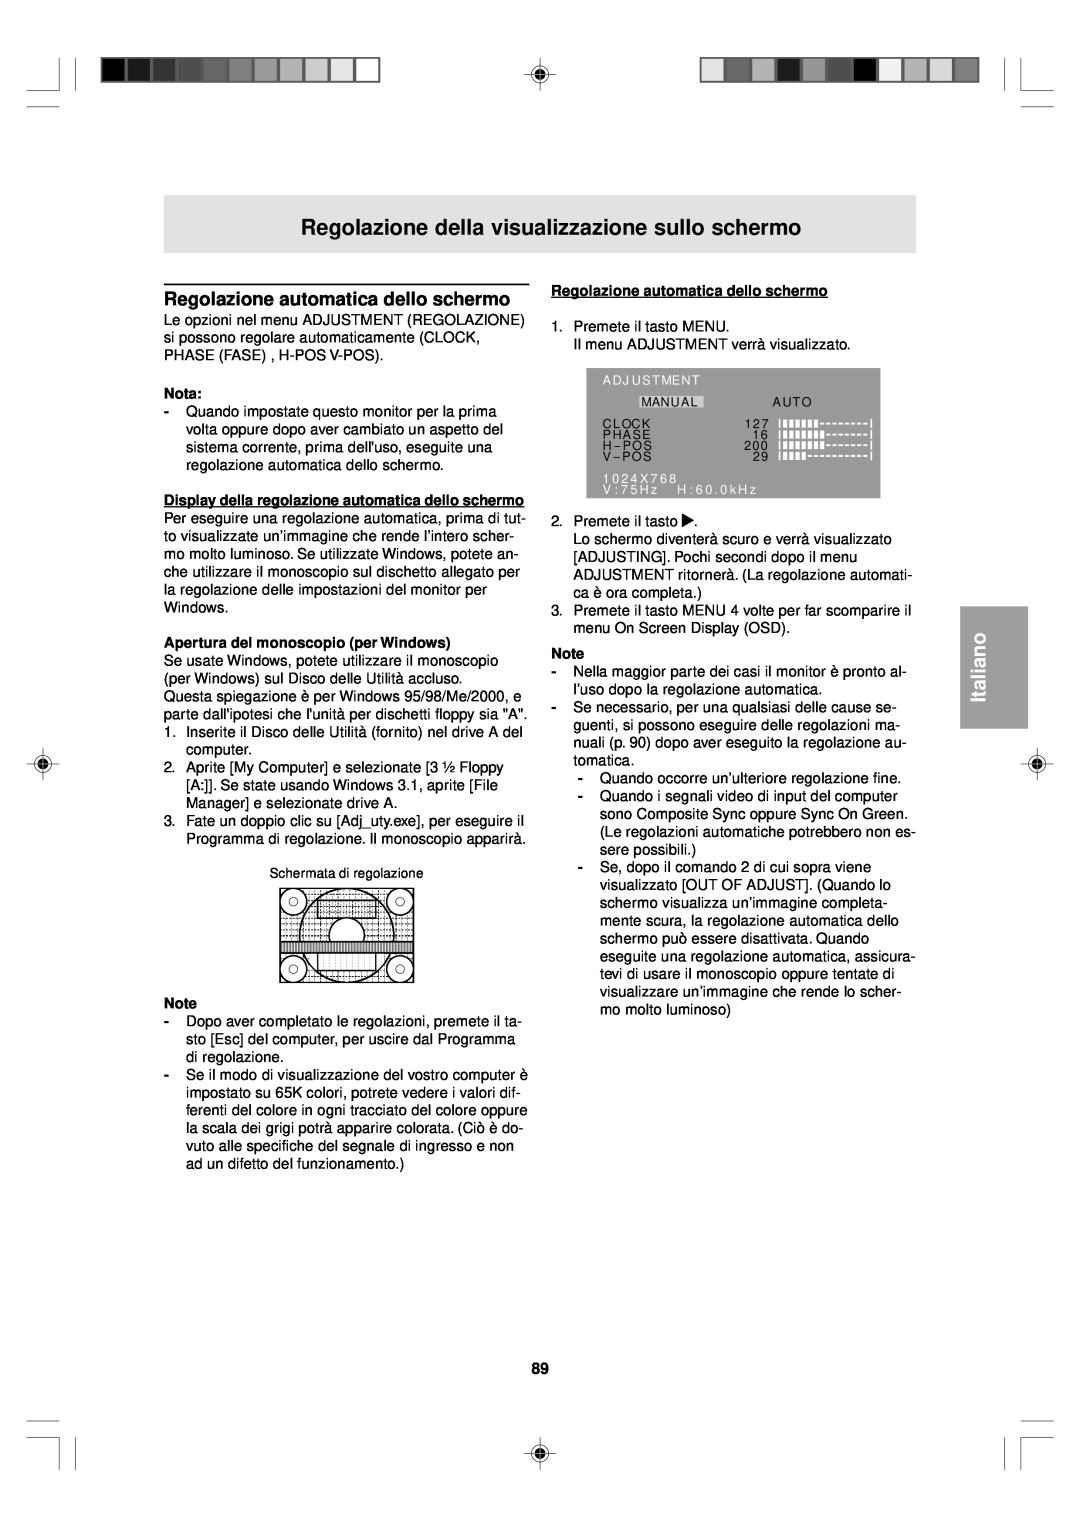 Sharp LL-T15V1 Regolazione della visualizzazione sullo schermo, Regolazione automatica dello schermo, Italiano, Nota 